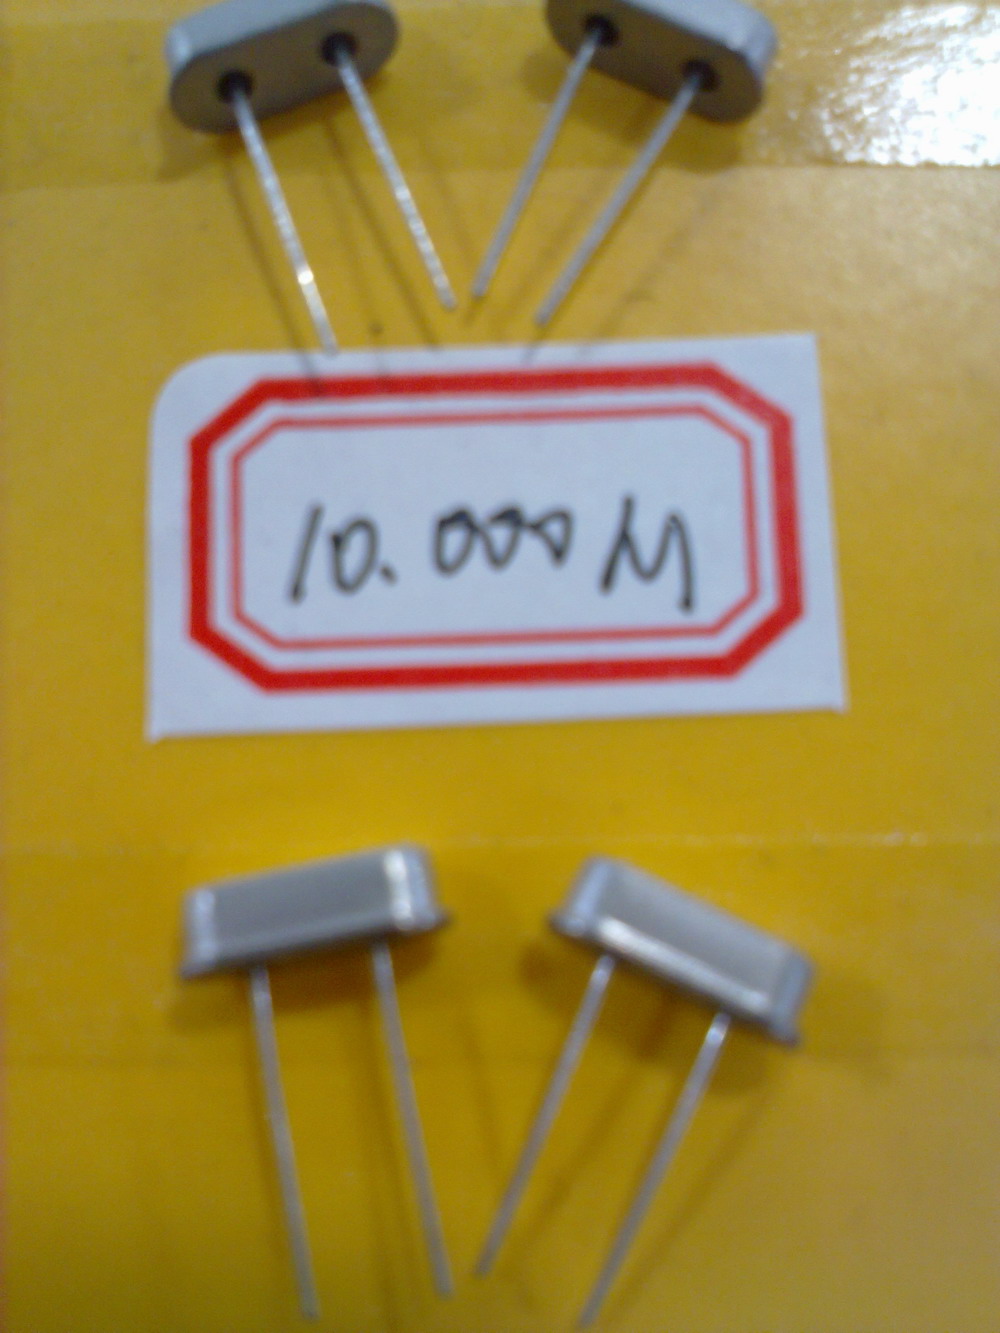 供应石英晶体谐振器 HC-49/S 10.000MHz(晶振）